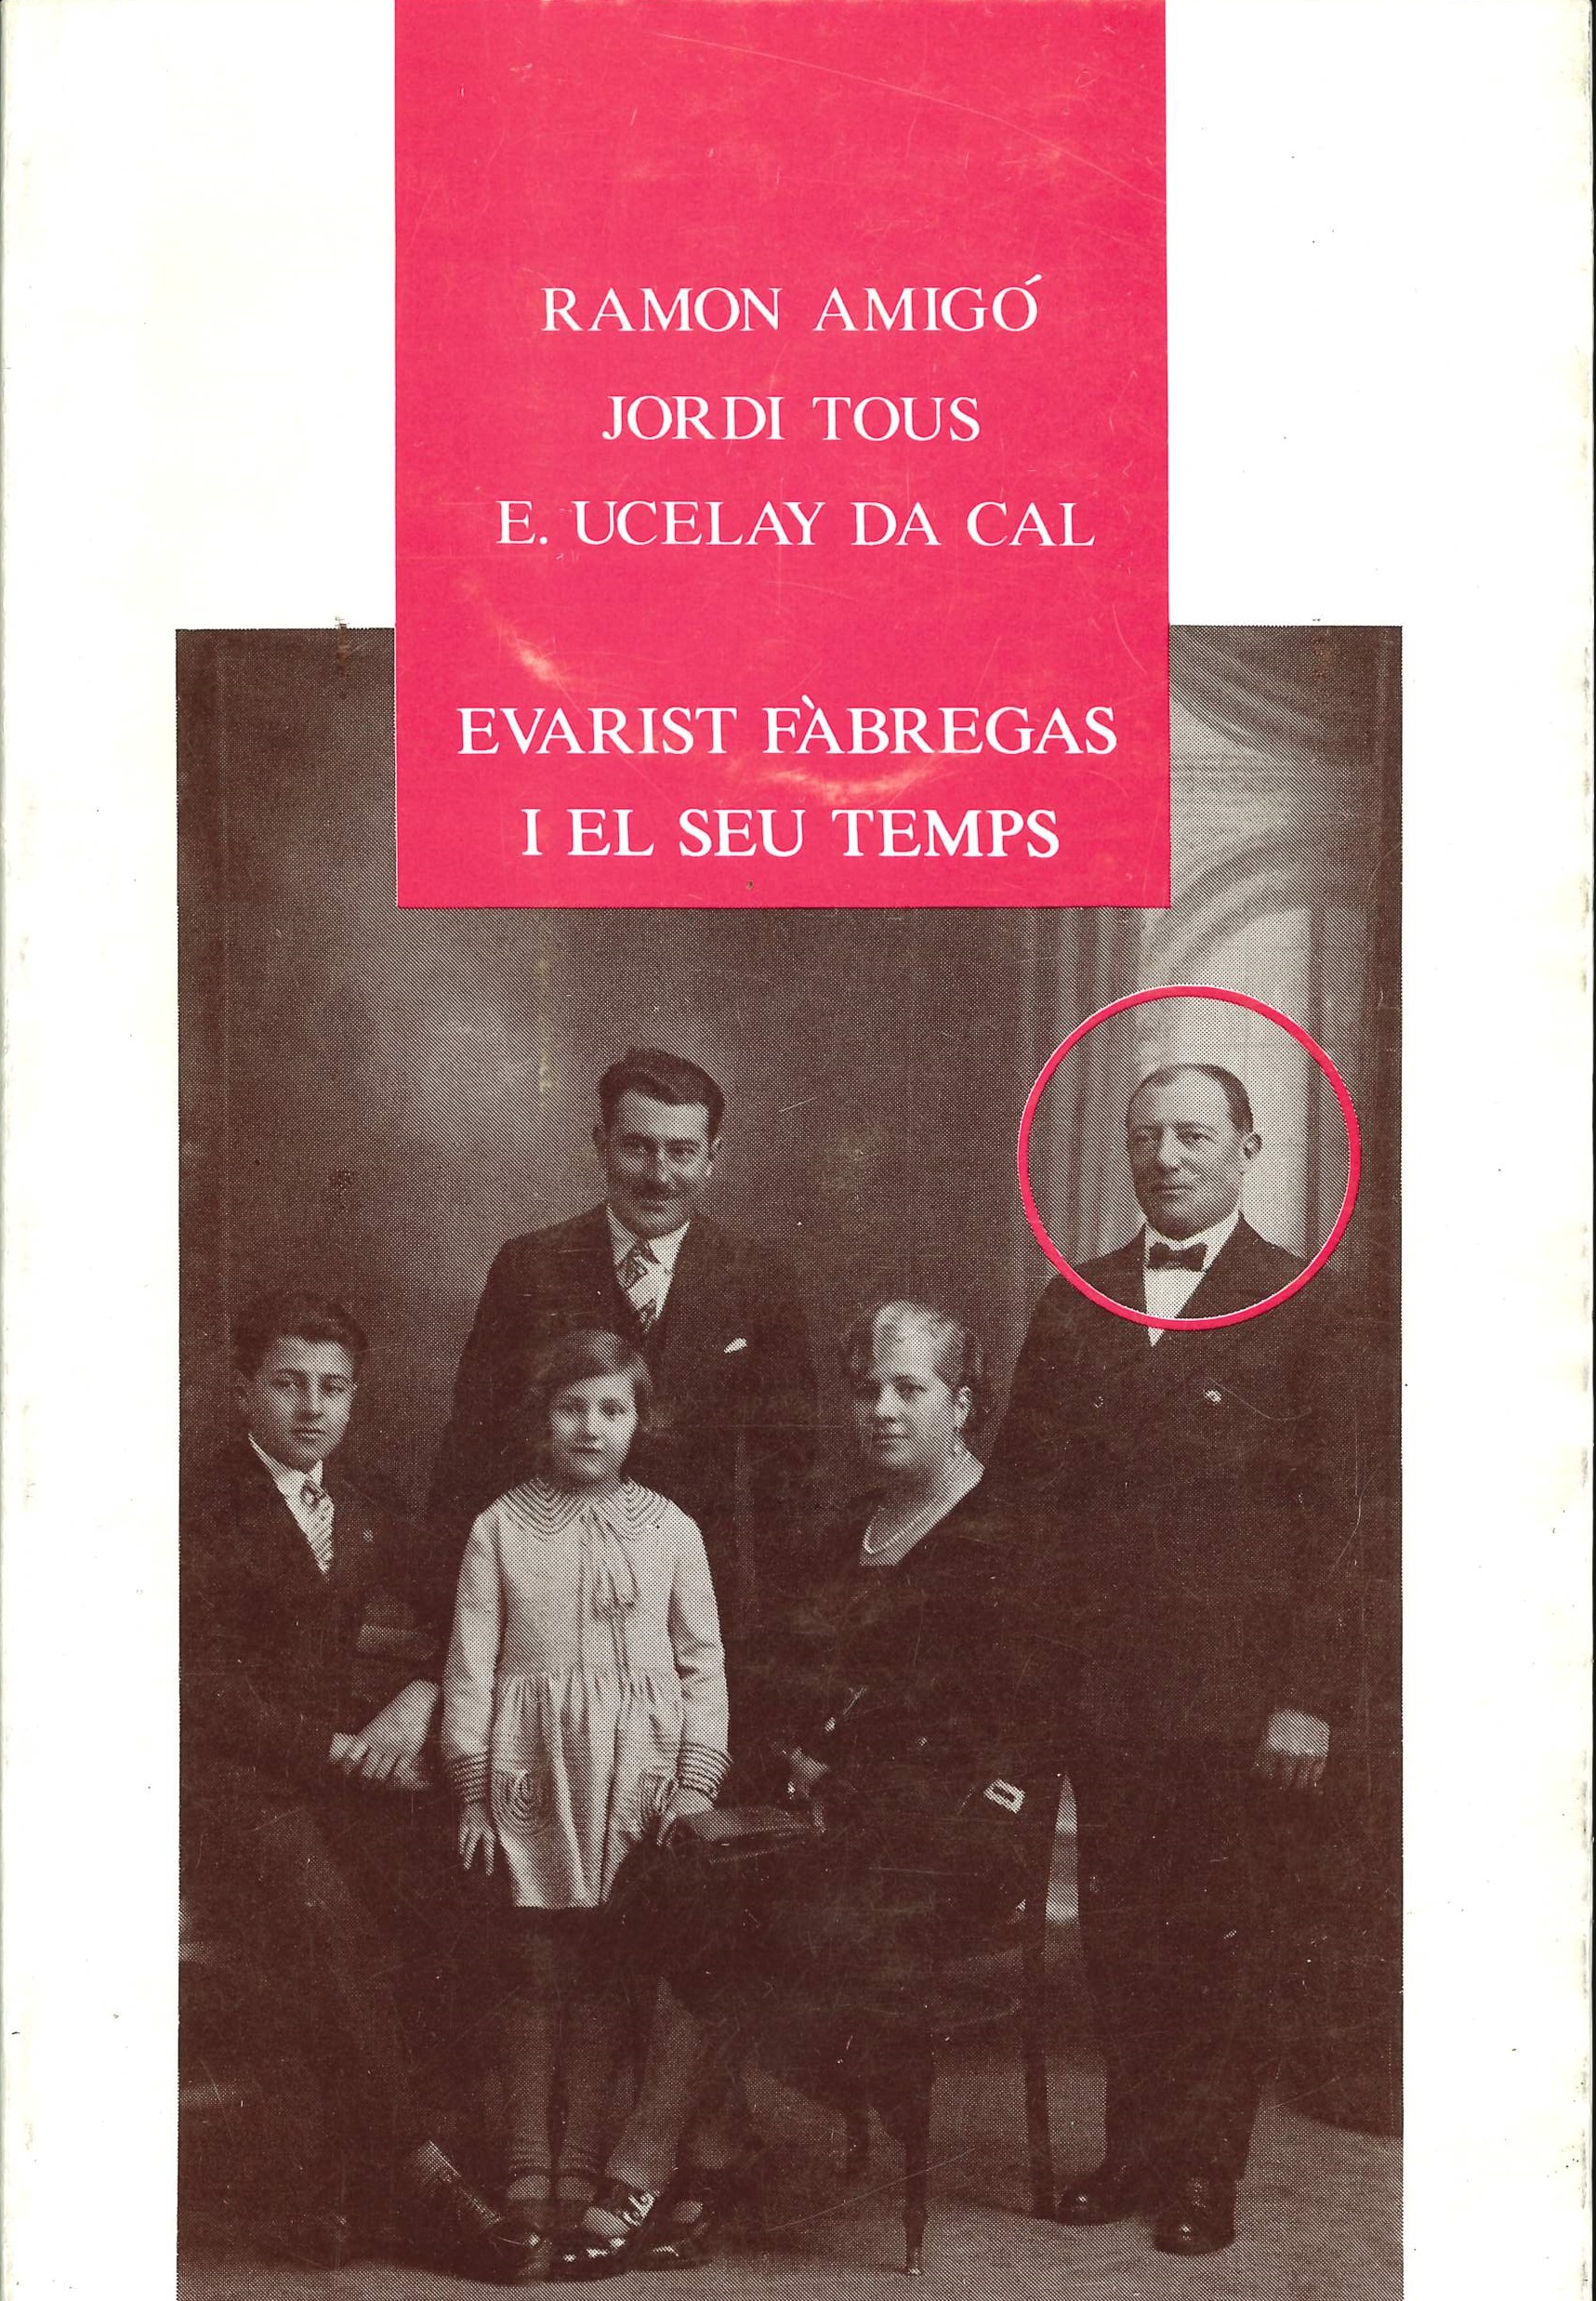 Imagen de portada del libro Evarist Fàbregas i el seu temps